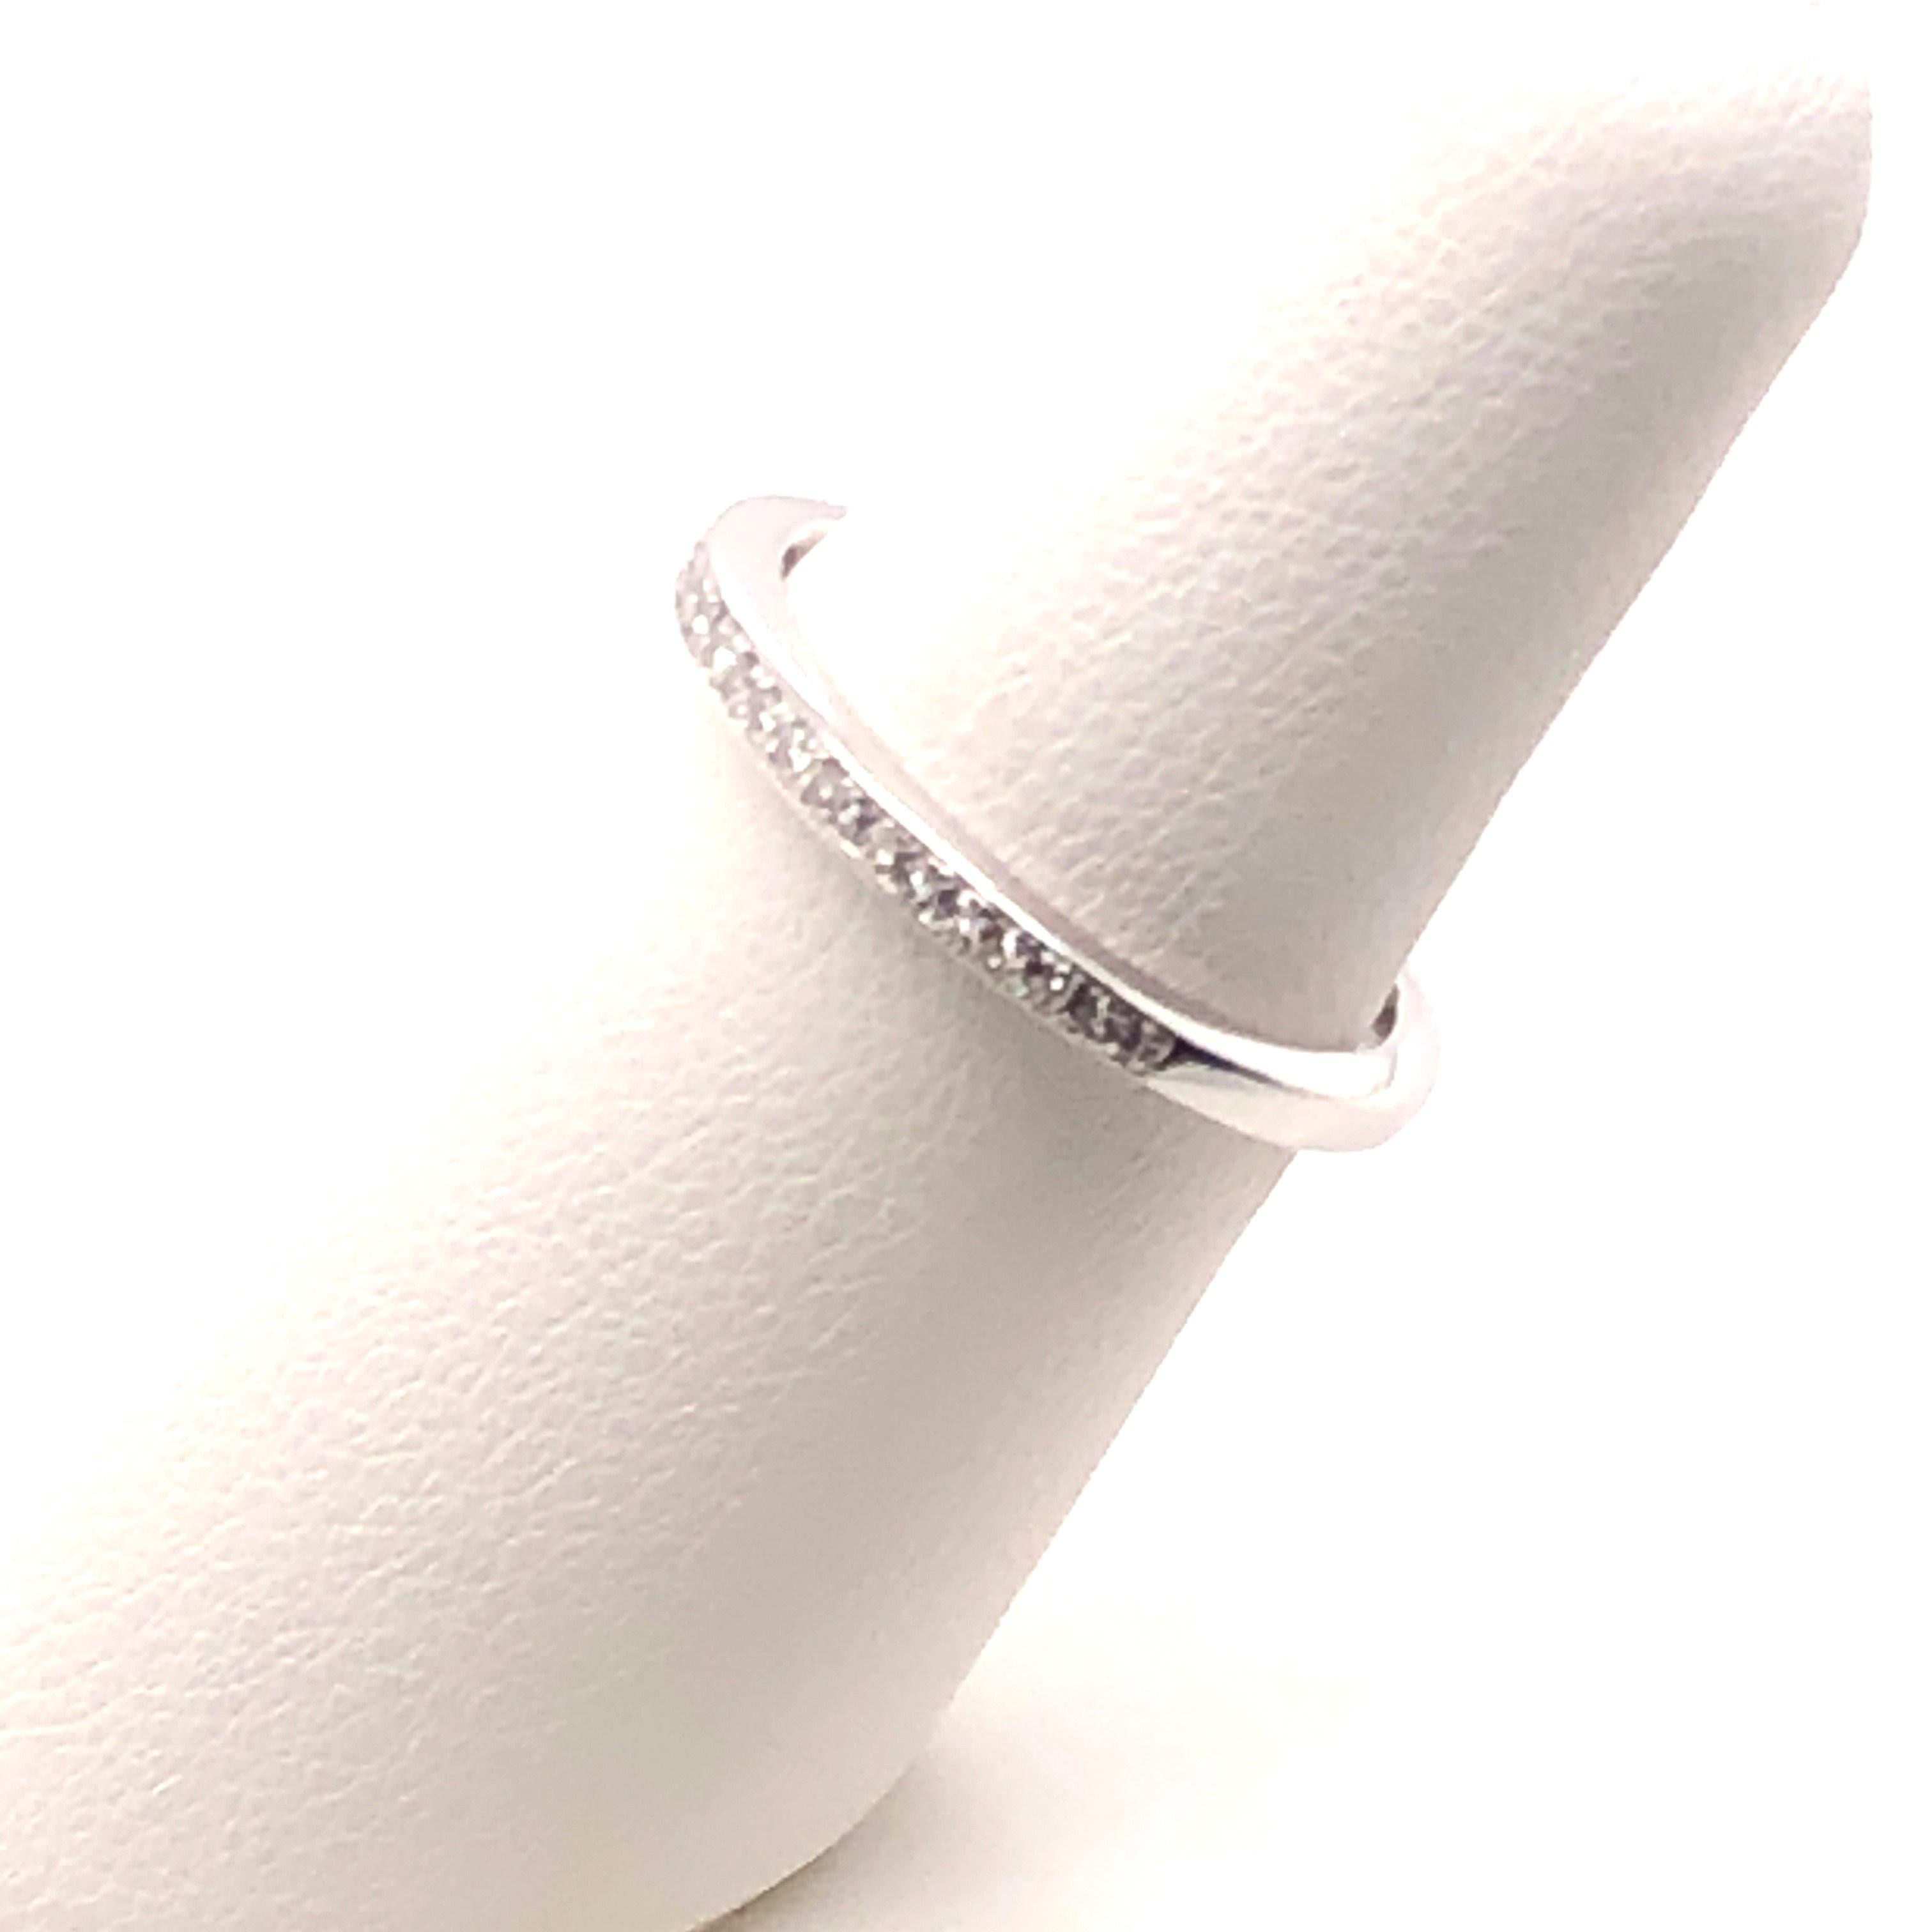 Elegantes und funkelndes Band aus 14kt Weißgold mit ca. 0,38 Karat Diamanten der Farbe H-I und SI1-SI2. Der Ring ist 2,35 mm x 1,75 mm groß und hat die Fingergröße 6. Dieses Band kann etwa 2 Größen nach oben oder unten angepasst werden. Dies ist ein